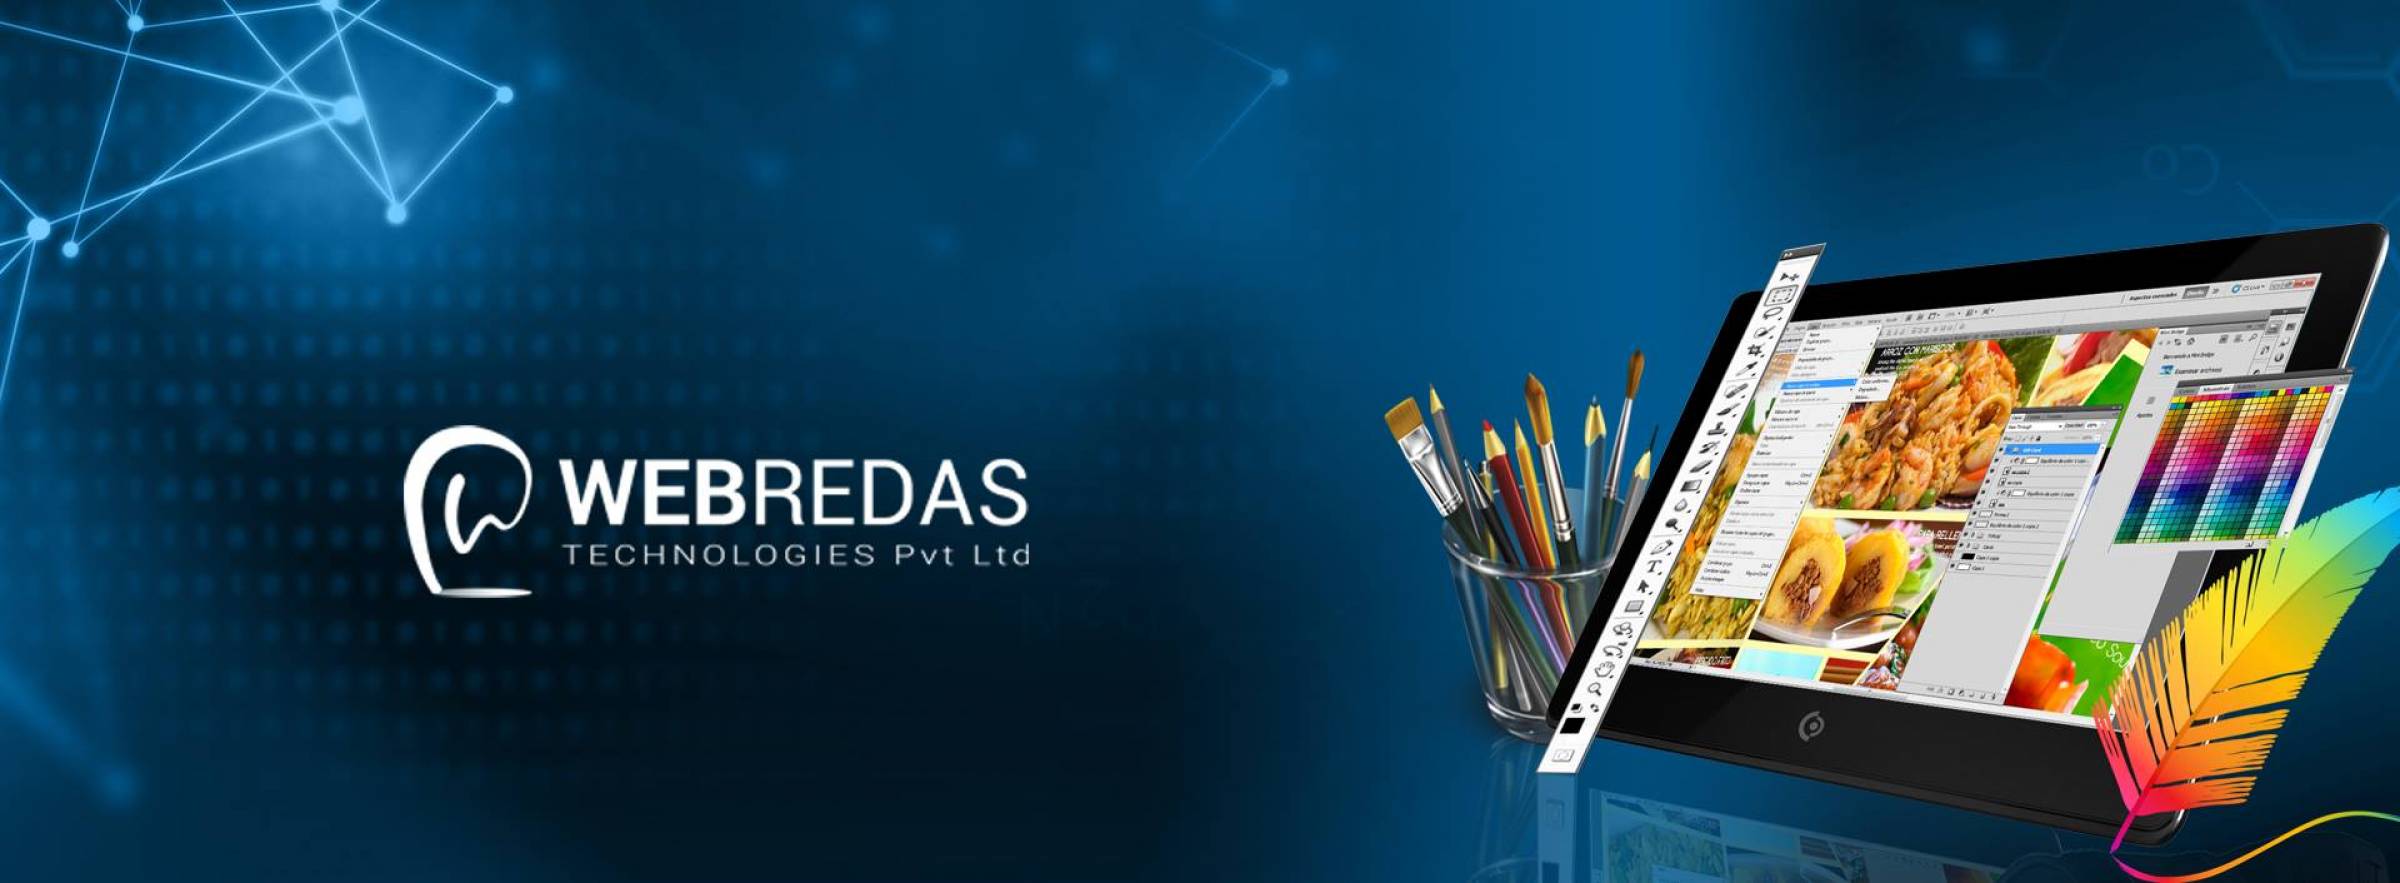 Webredas Technologies Pvt Ltd